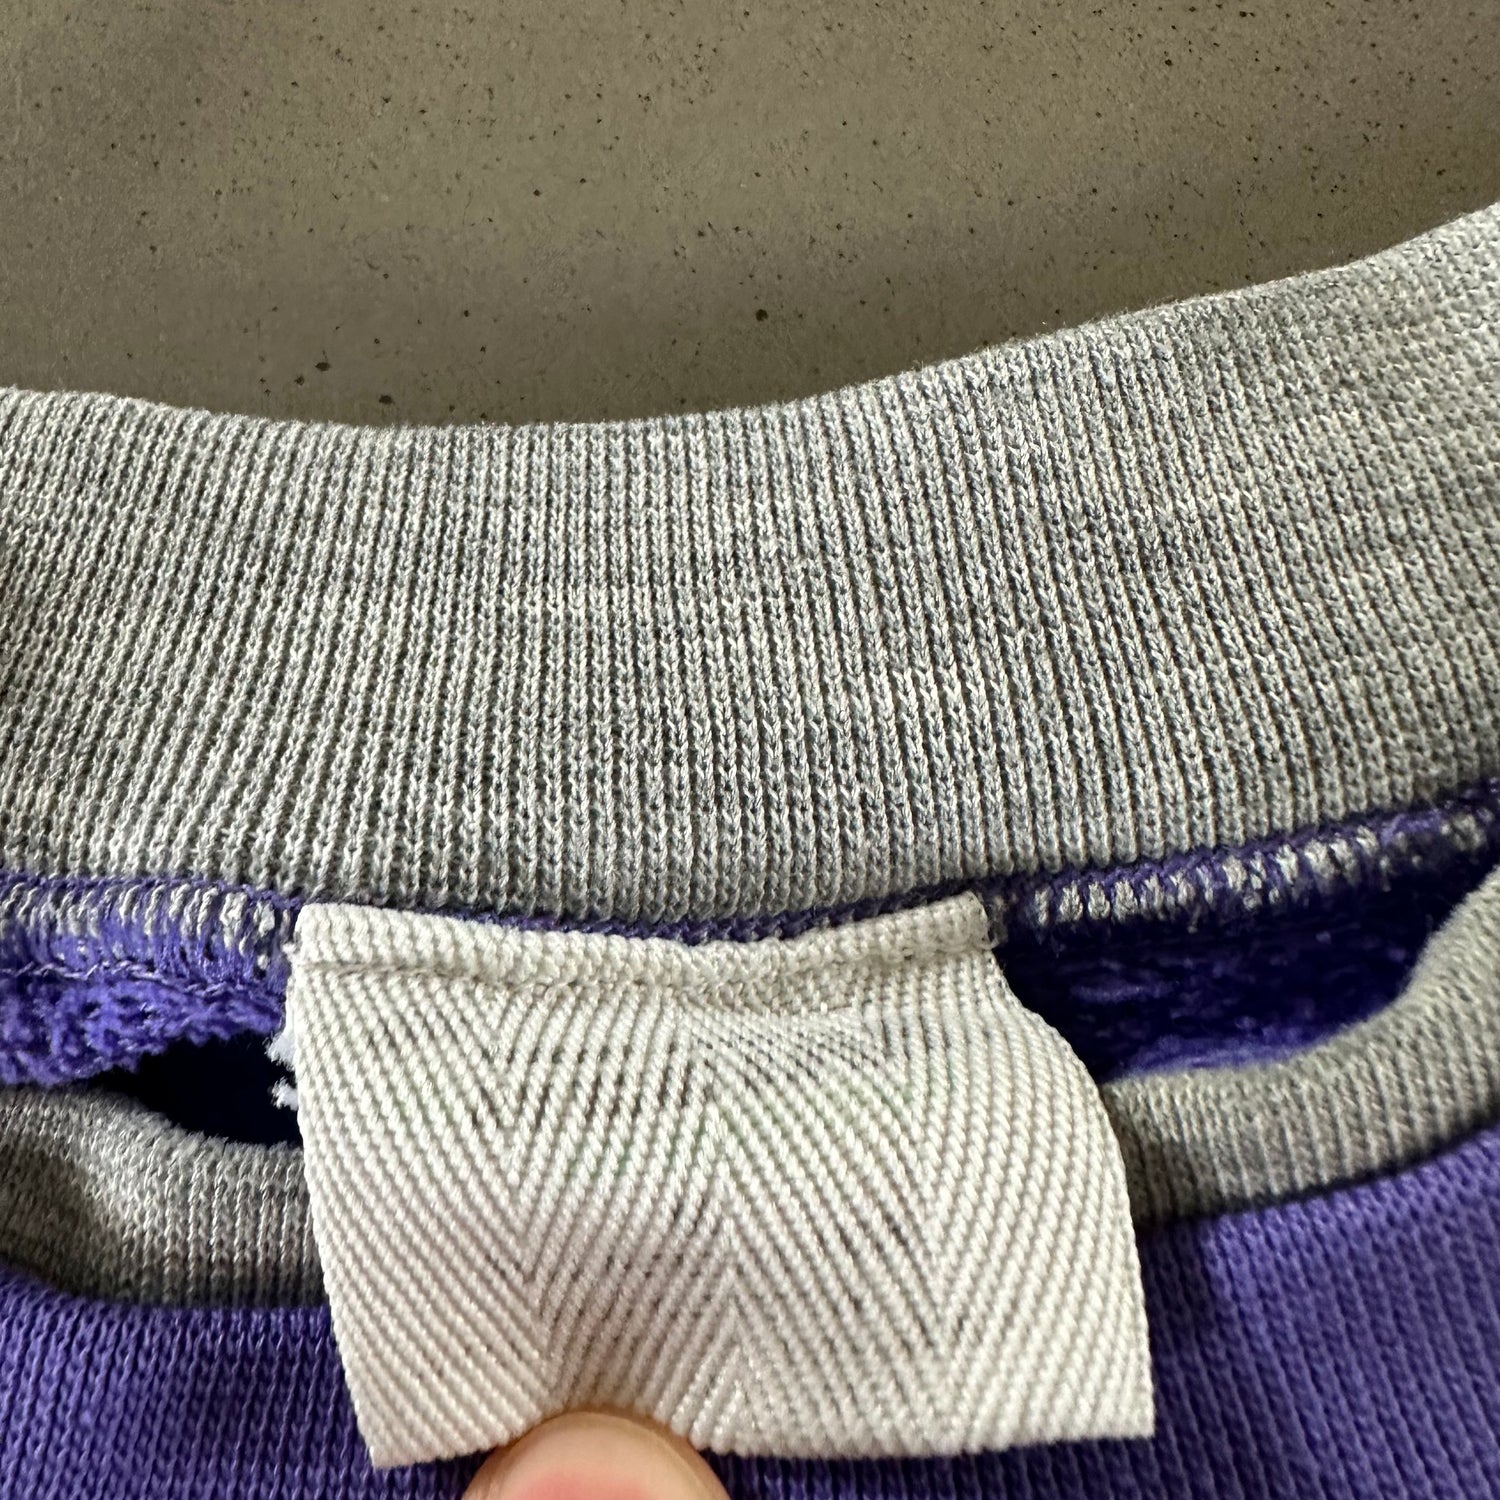 Vintage 1990s Purple Striped Sweatshirt size Medium